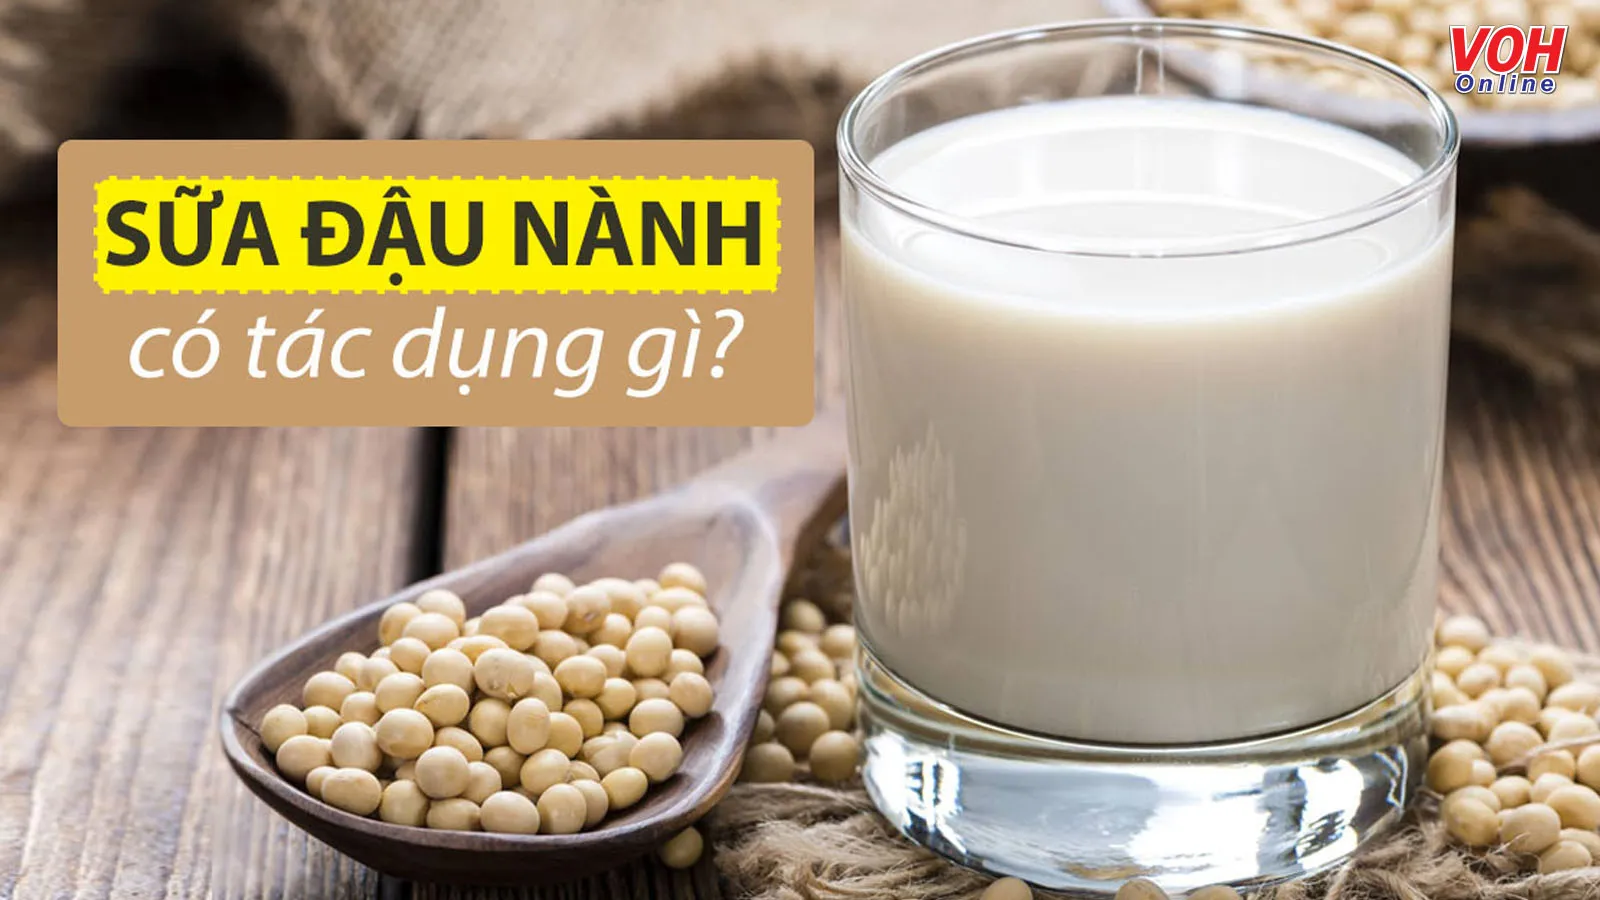 Tác dụng của sữa đậu nành tốt cho sức khỏe như thế nào?